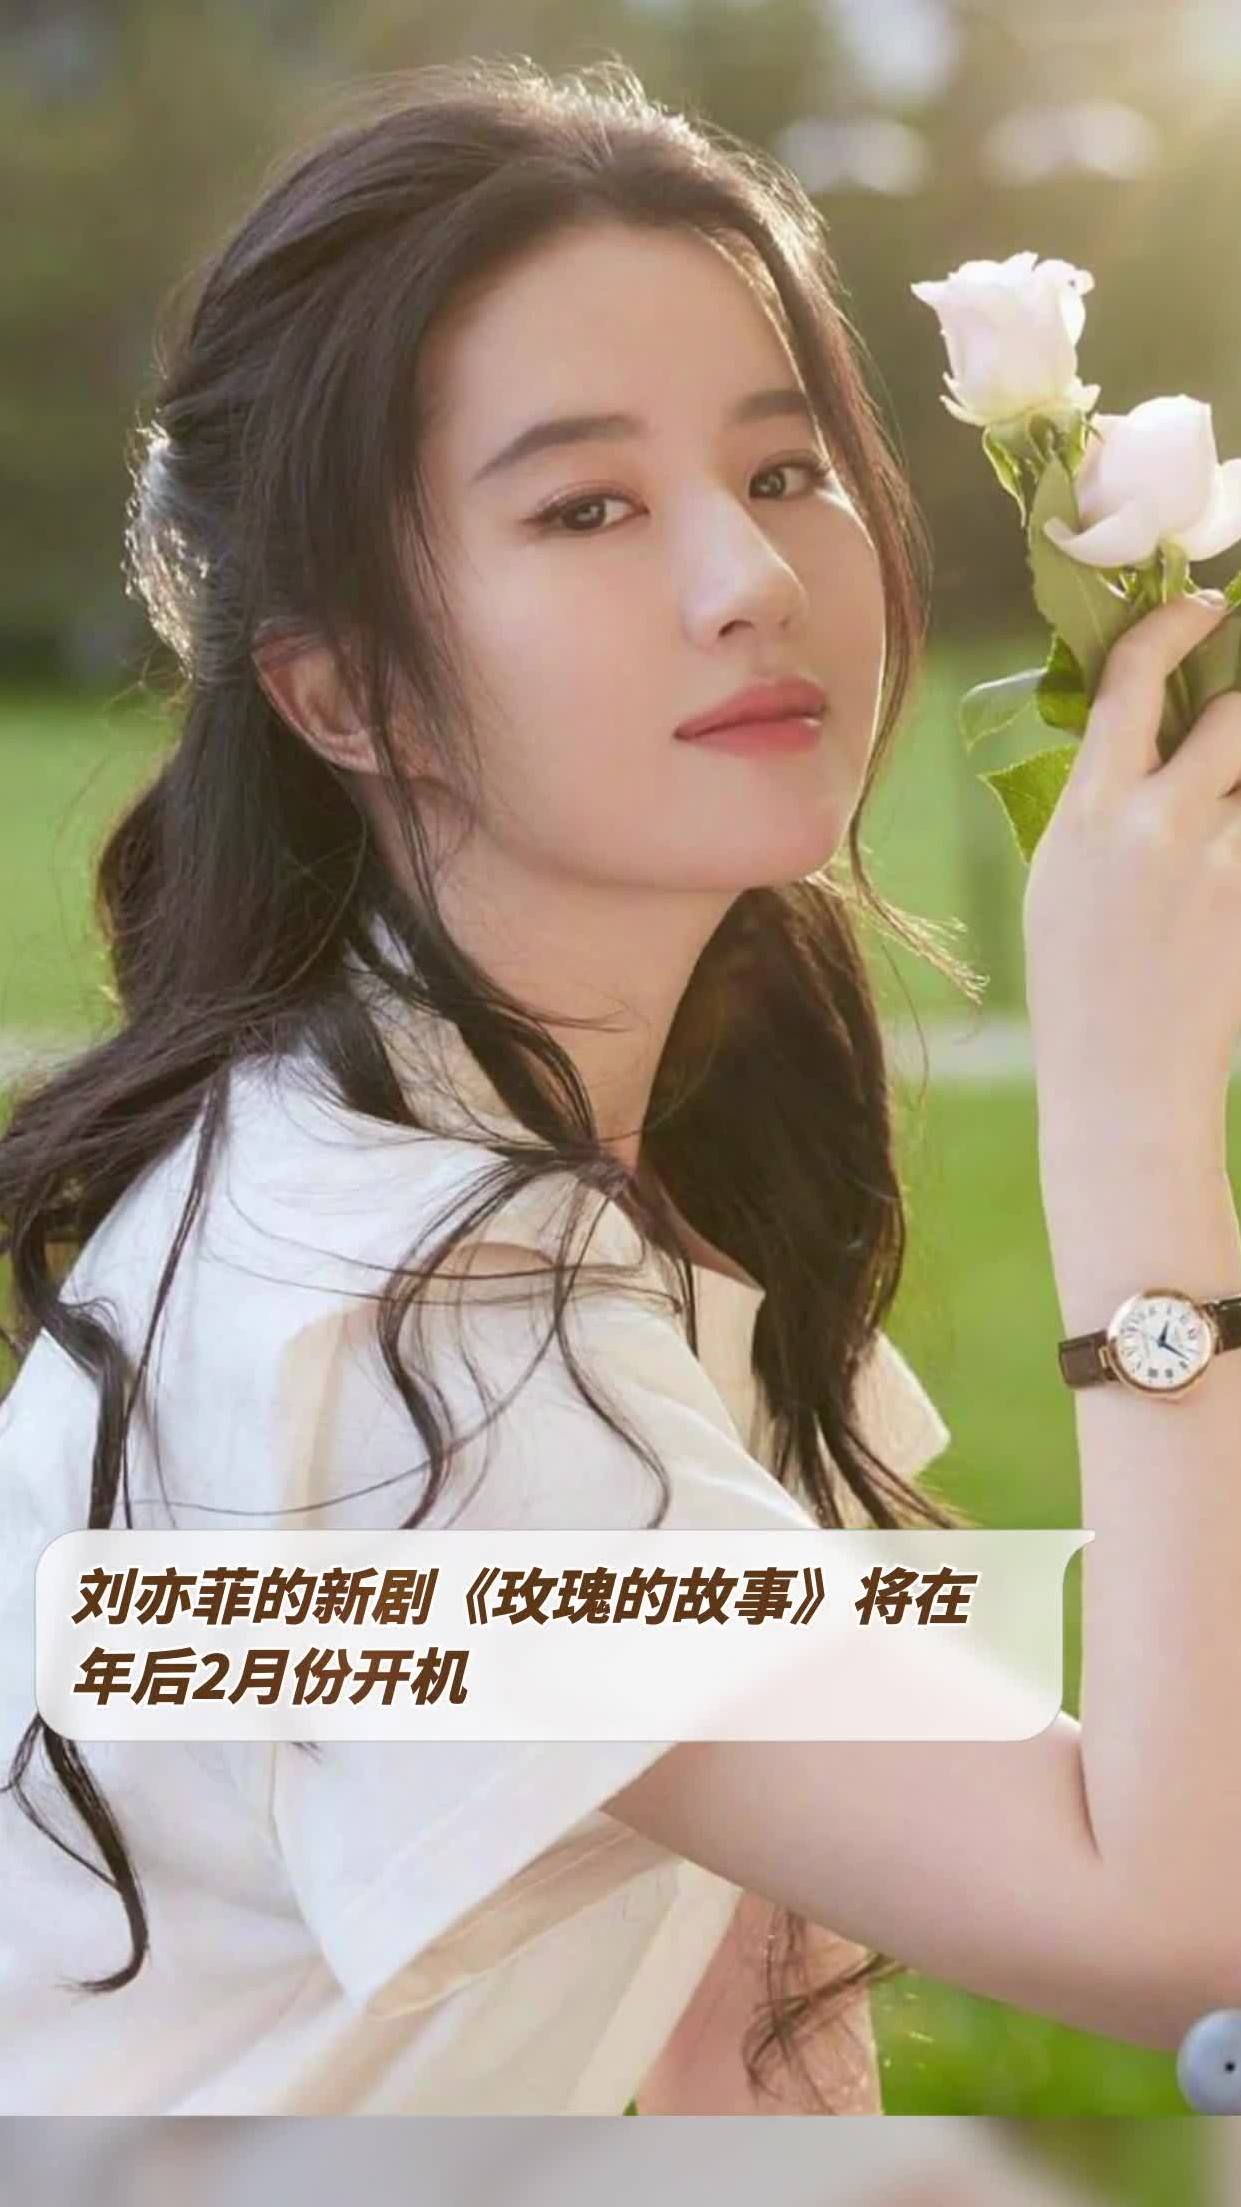 《玫瑰故事》曝海报 刘亦菲身处玫瑰花丛宛若油画